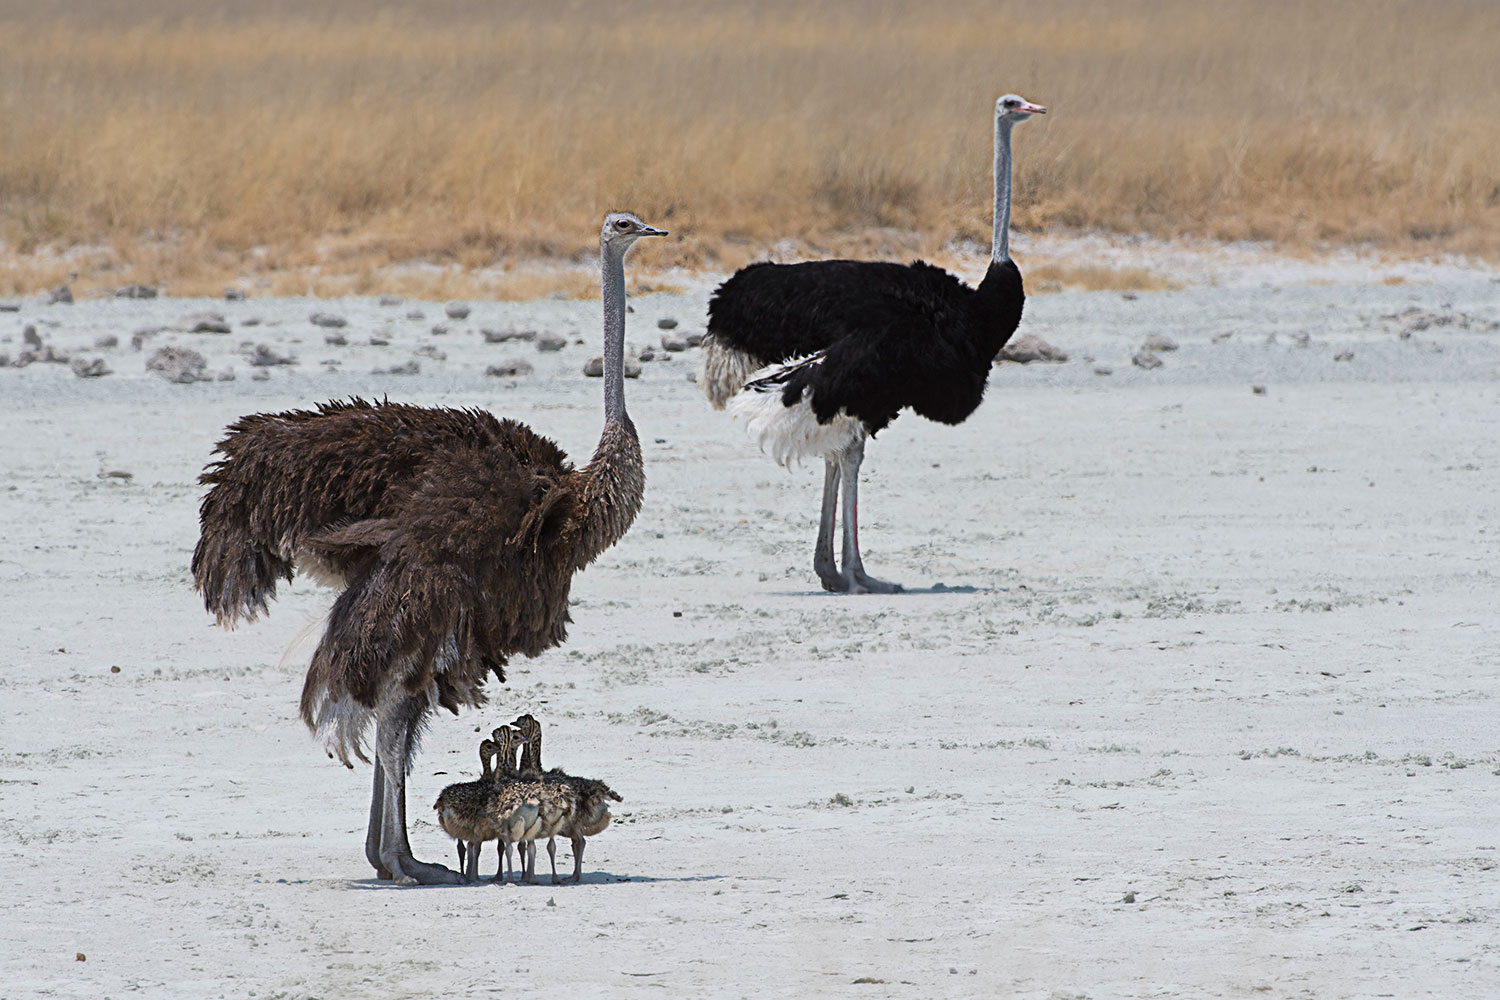 Ostriche family in the sun...